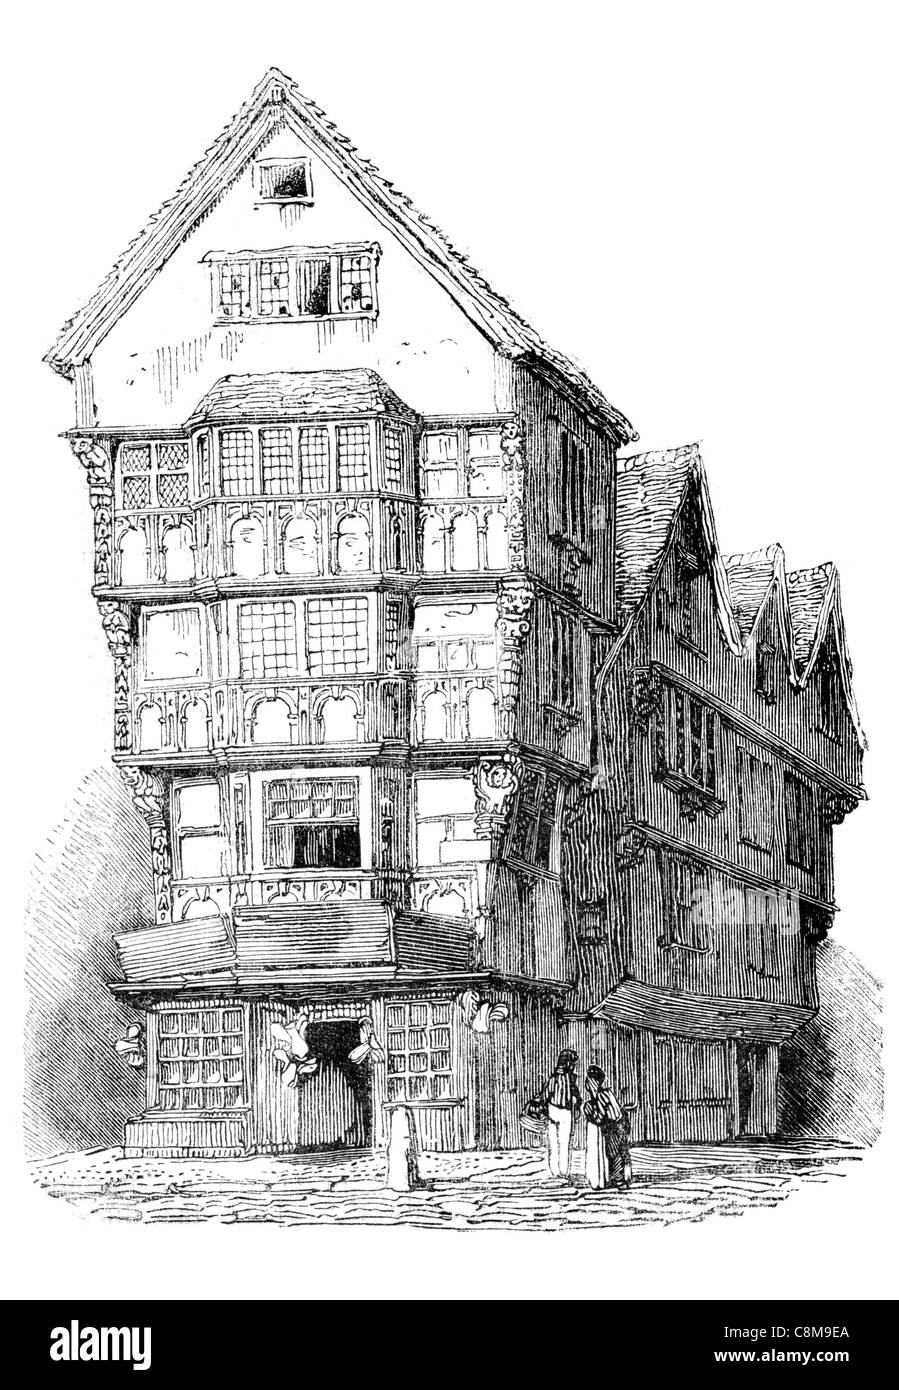 La moitié du 16ème siècle l'architecture de rue à pans de bois accueil chambre façade façade en bois toit windows fenêtre ville Banque D'Images